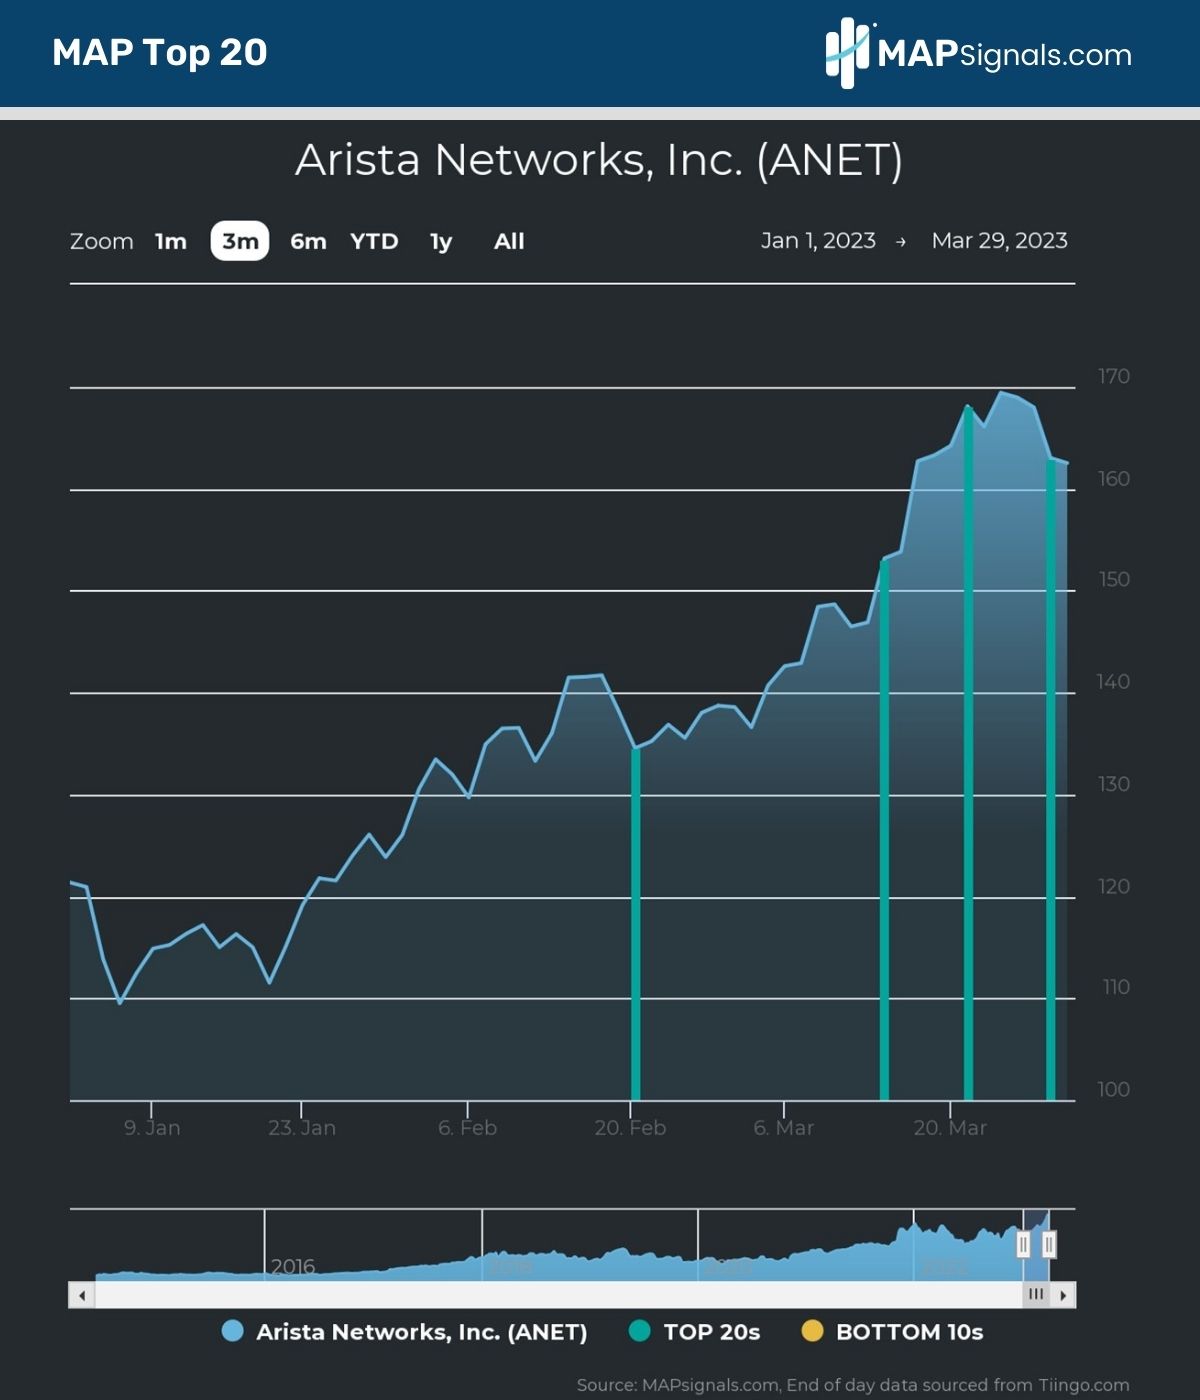 Arista Networks, Inc. (ANET) MAP Top 20 Signals | MAPsignals